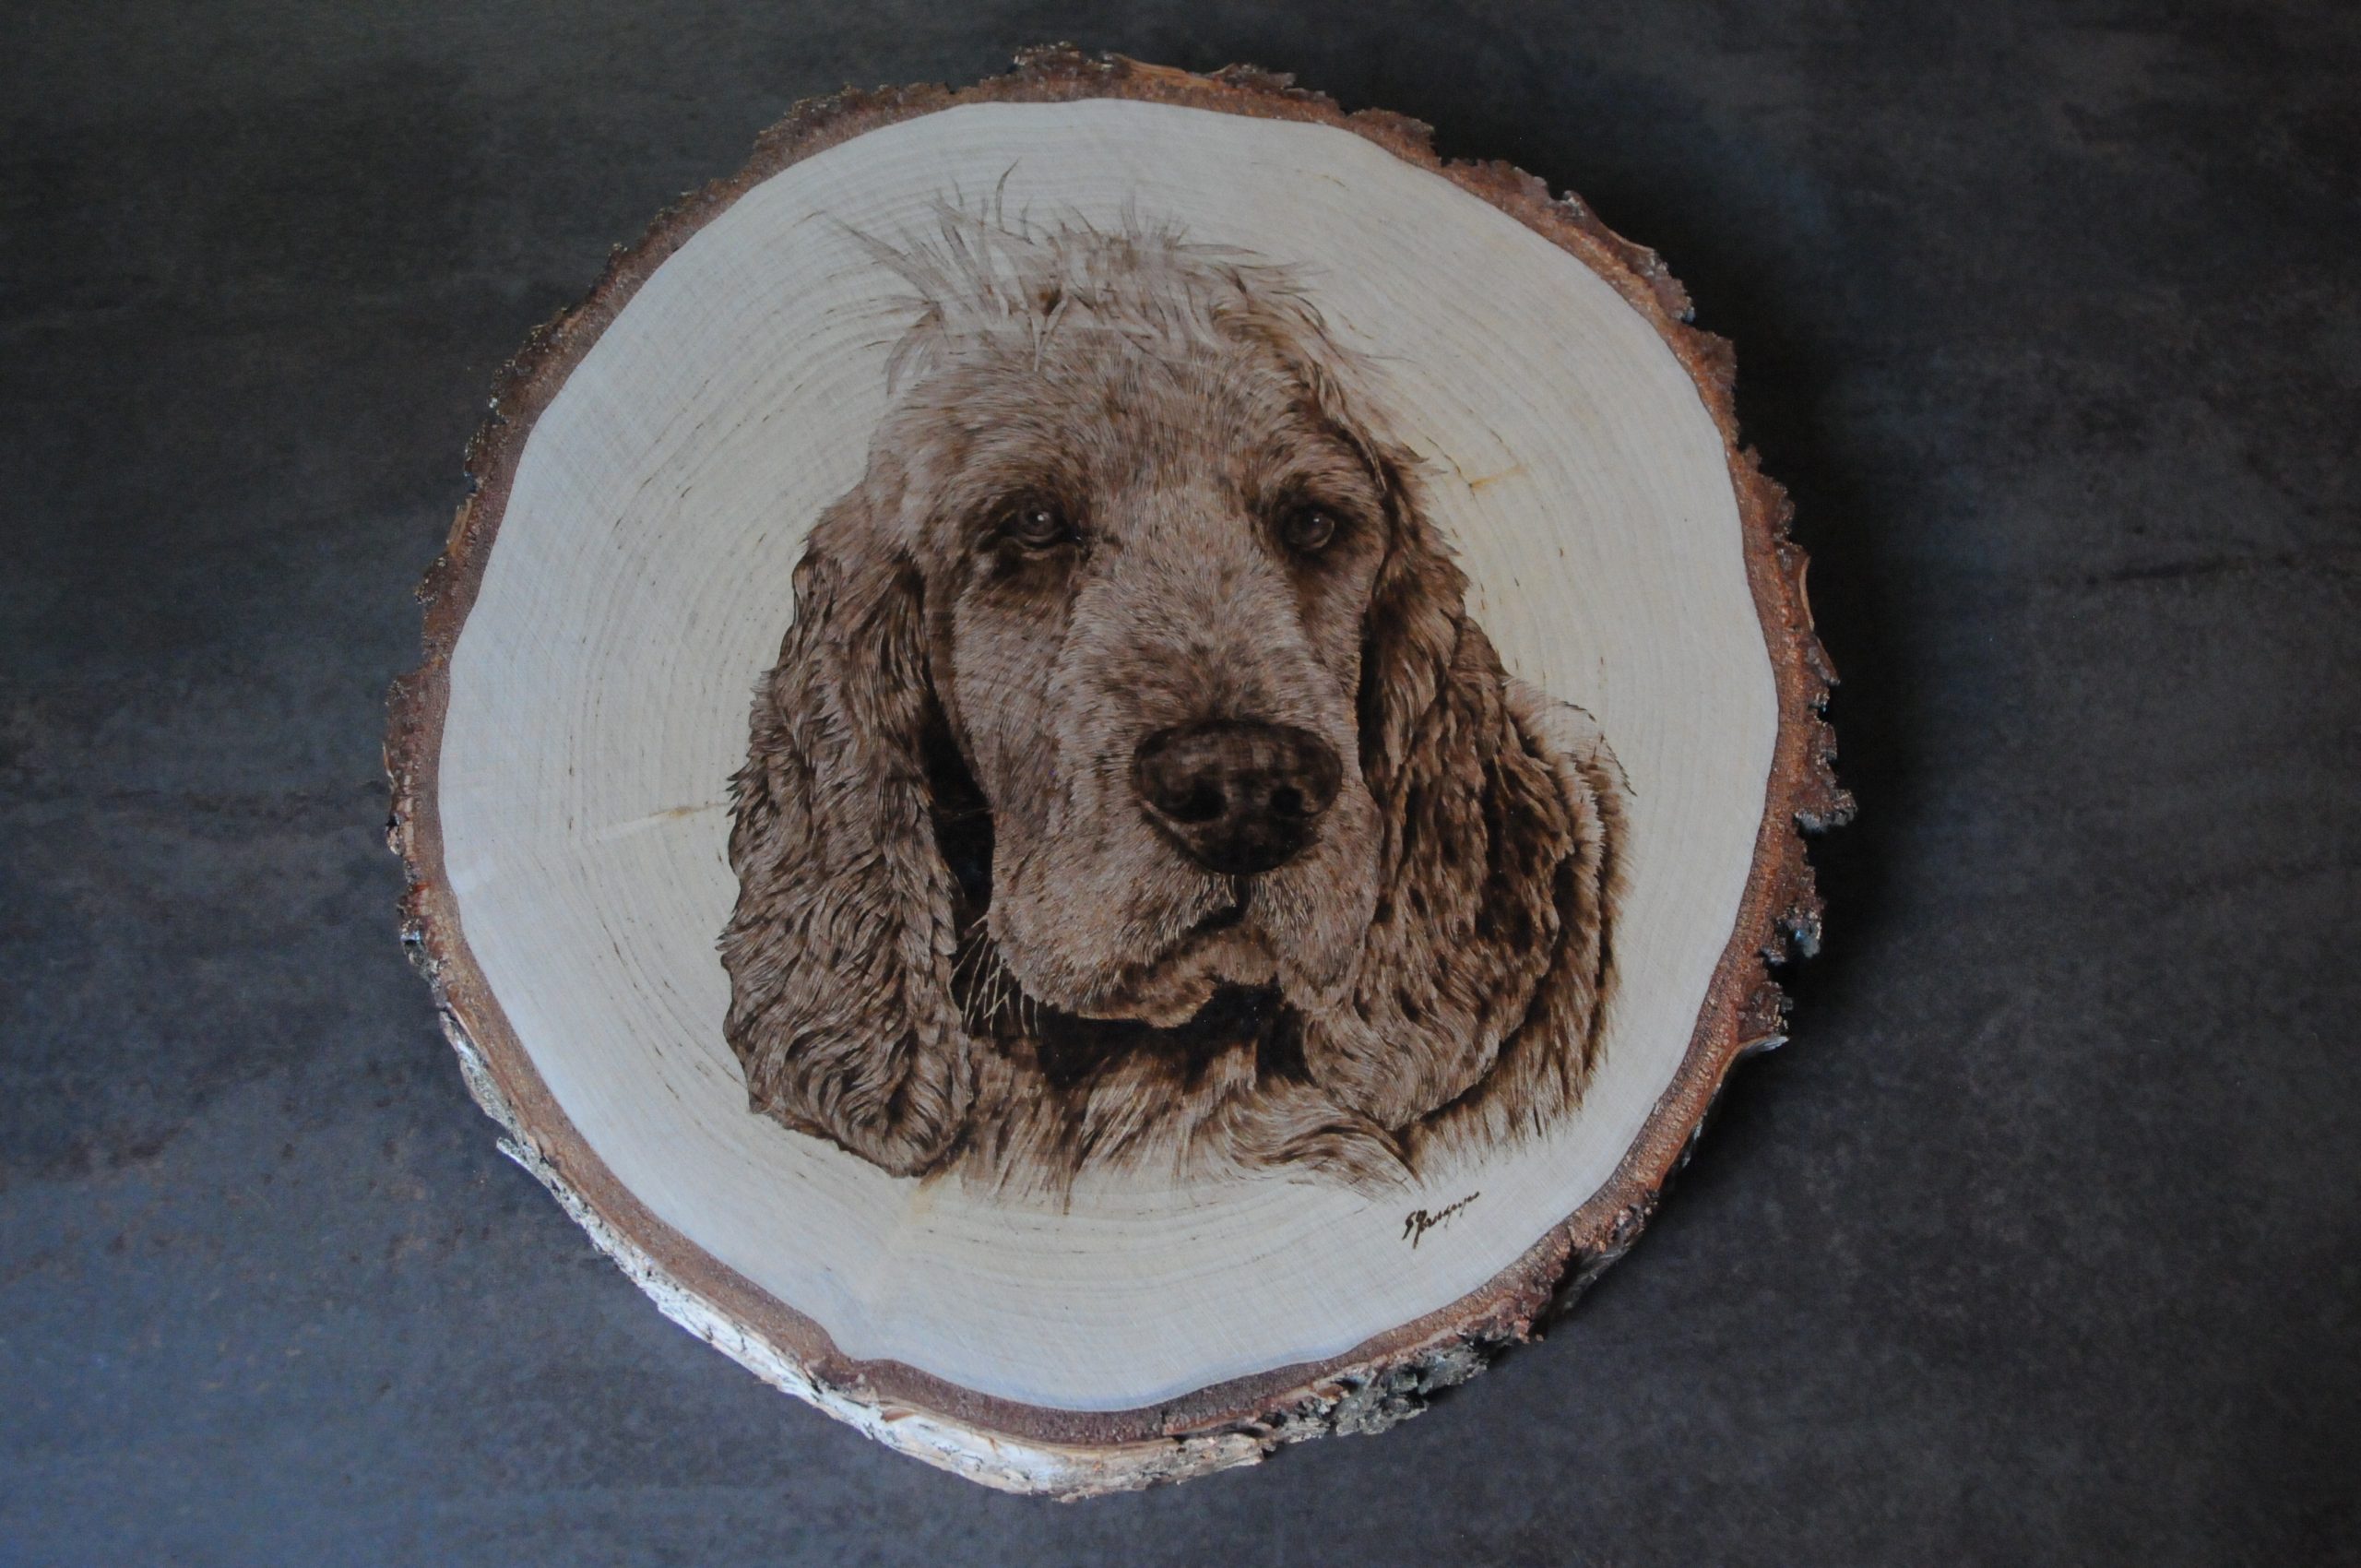 wypalanie w drewnie, sylwia, pirografia, janczyszyn, pyrography, handmade, rękodzieło, pomysł na prezent, portret psa